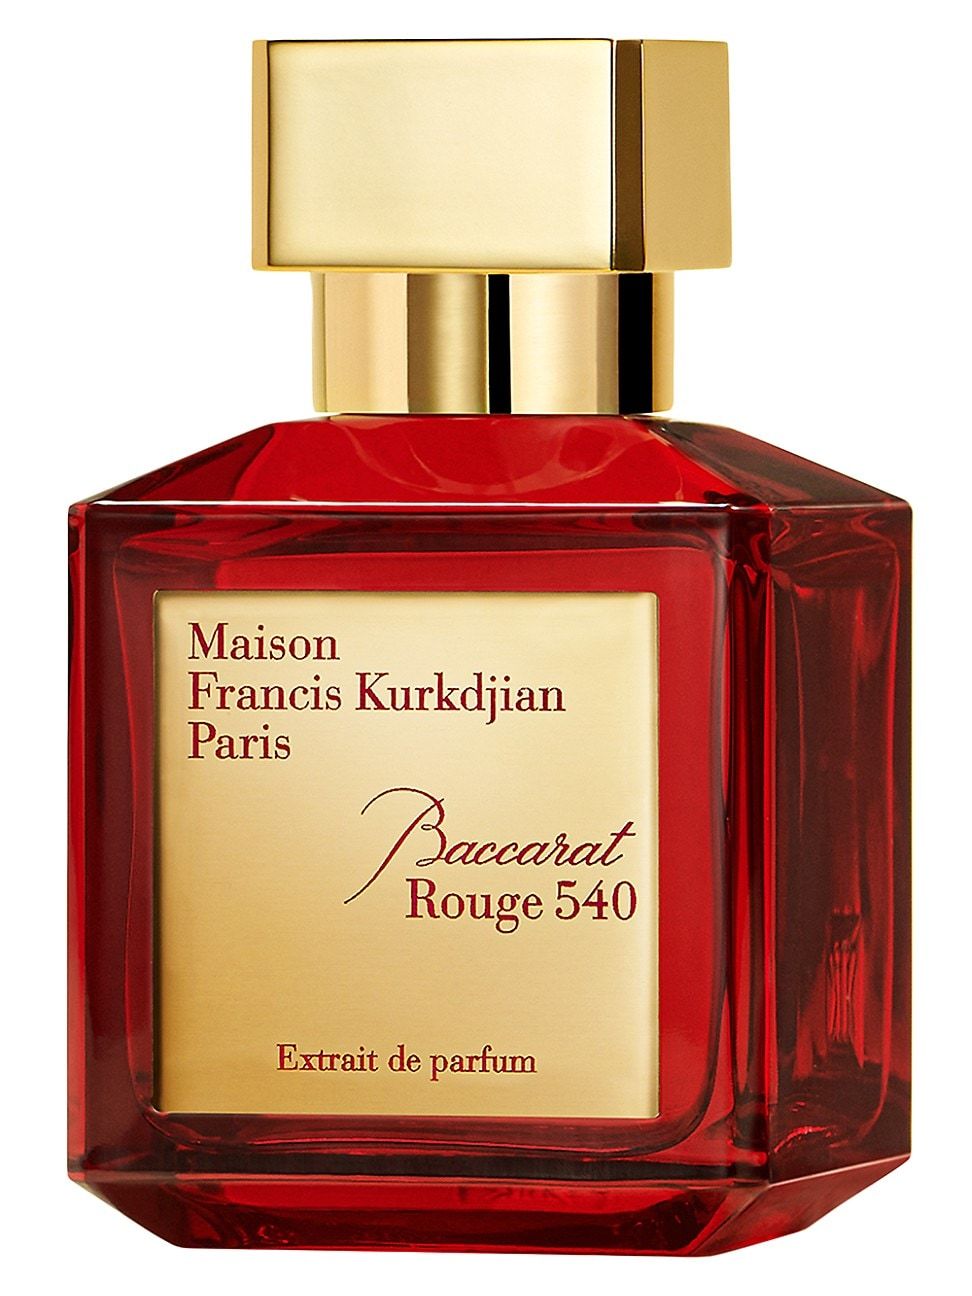 Baccarat Rouge 540 Extrait de Parfum - Size 5.0-6.8 oz. - Size 5.0-6.8 oz. | Saks Fifth Avenue